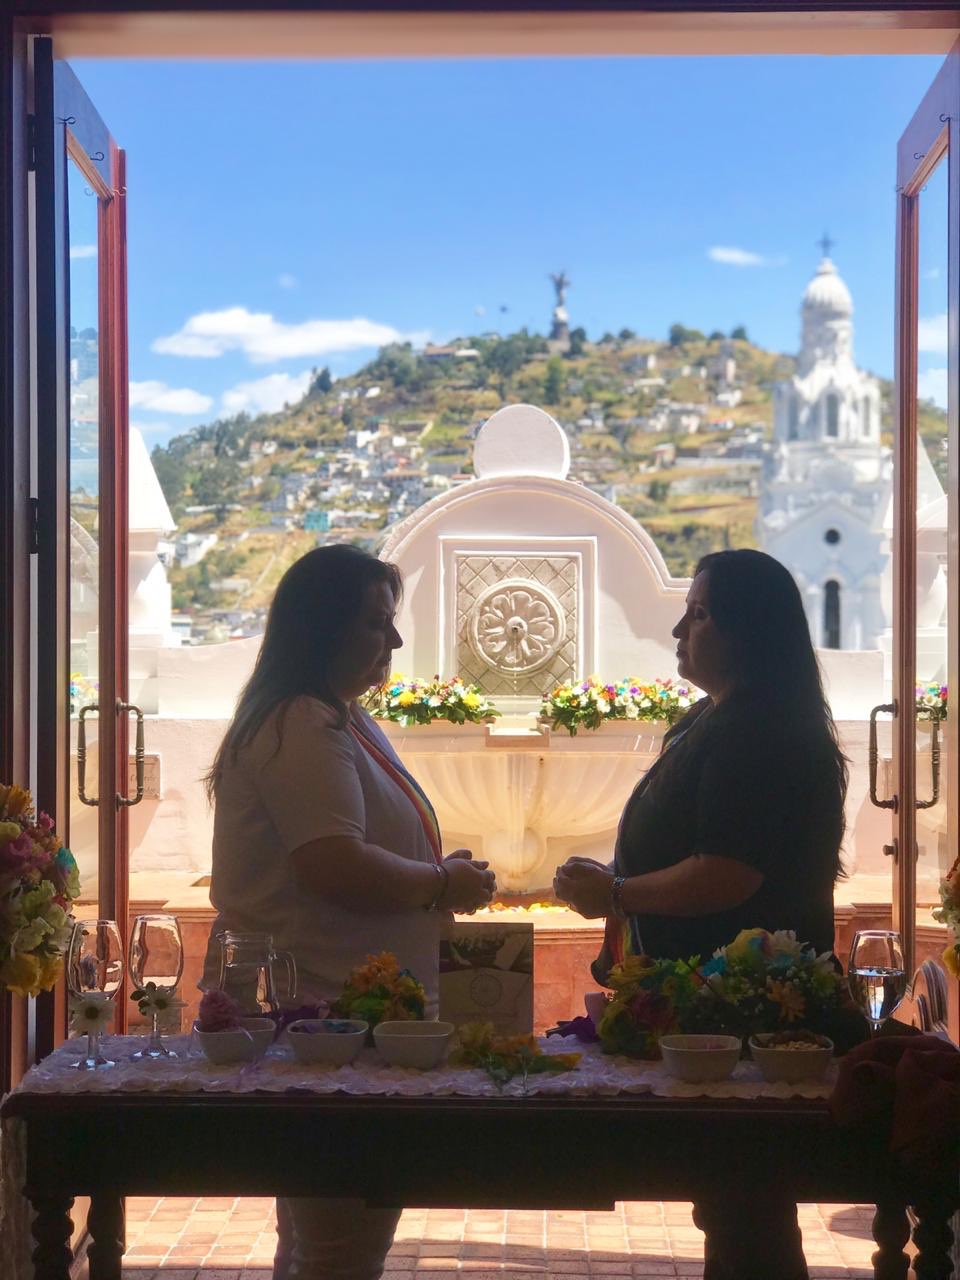 Ecuador same-sex couple activists get married